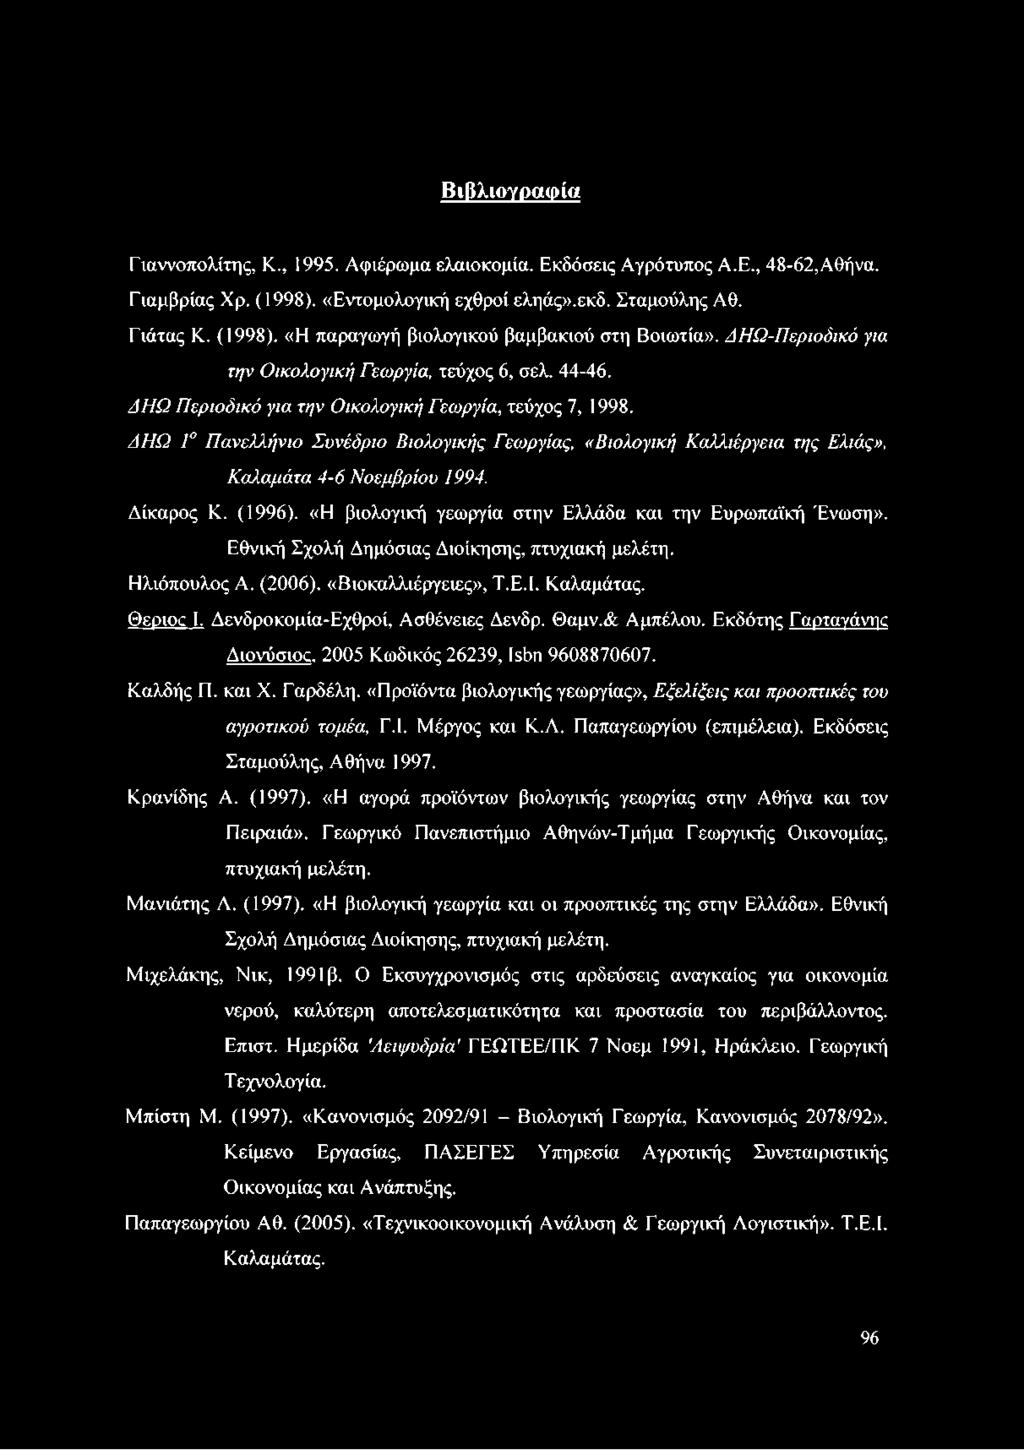 ΔΗΩ Γ Πανελλήνιο Συνέδριο Βιολογικής Γεωργίας, «Βιολογική Καλλιέργεια της Ελιάς», Καλαμάτα 4-6 Νοεμβρίου 1994. Δίκαρος Κ. (1996). «Η βιολογική γεωργία στην Ελλάδα και την Ευρωπαϊκή Ένωση».